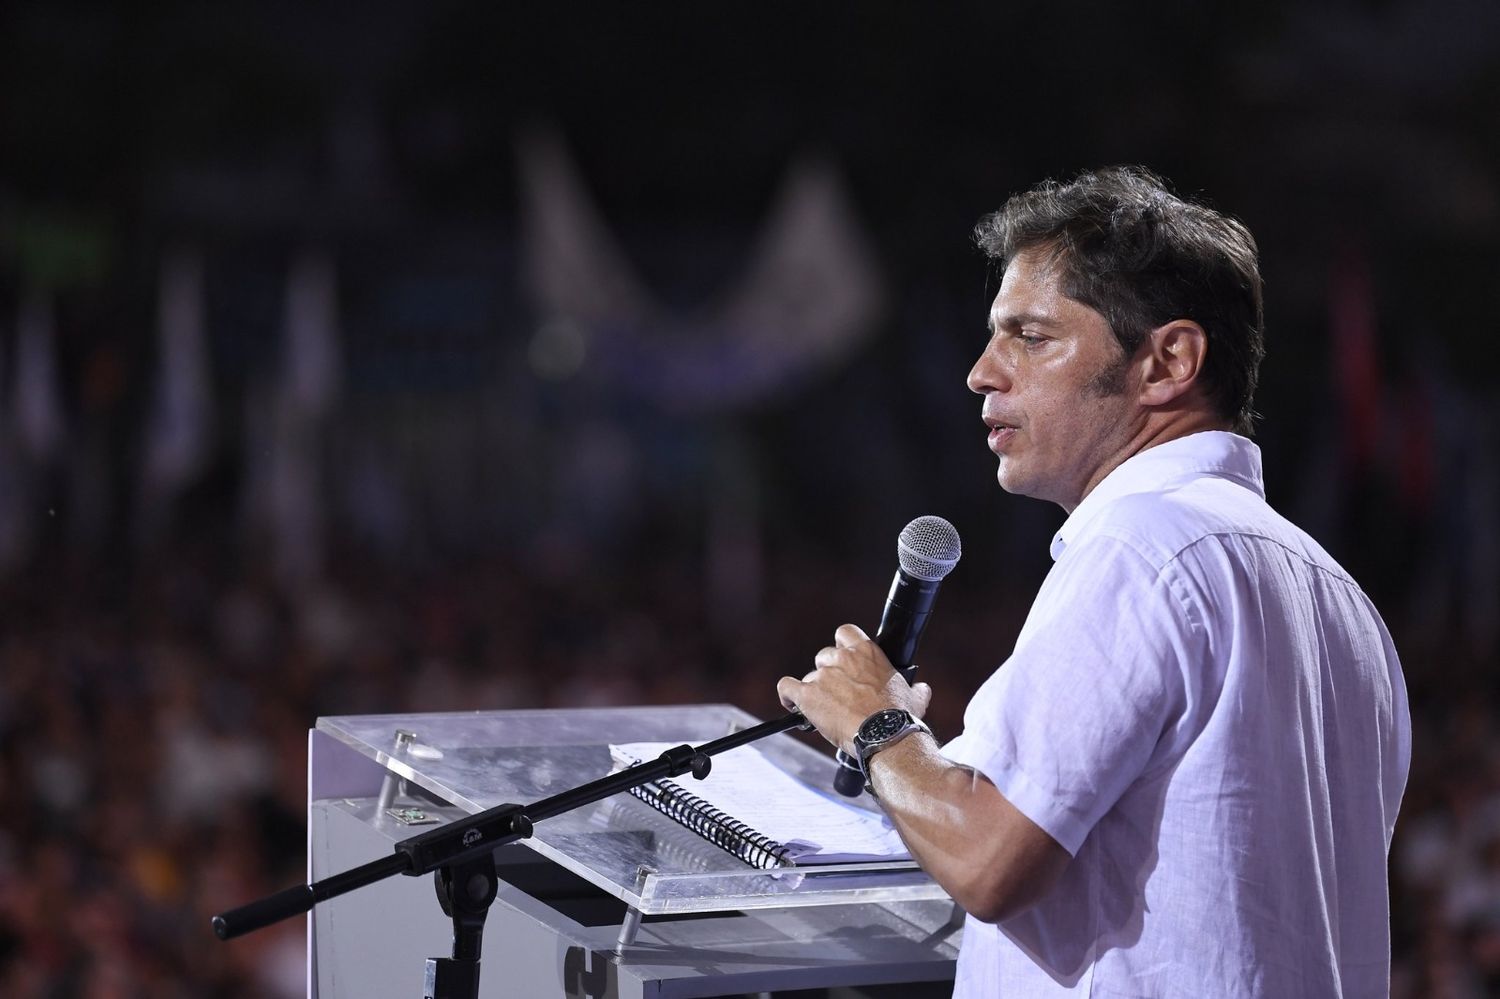 Axel Kicillof en el Plenario: “No la van a poder proscribir, si el pueblo quiere a Cristina, será la candidata"